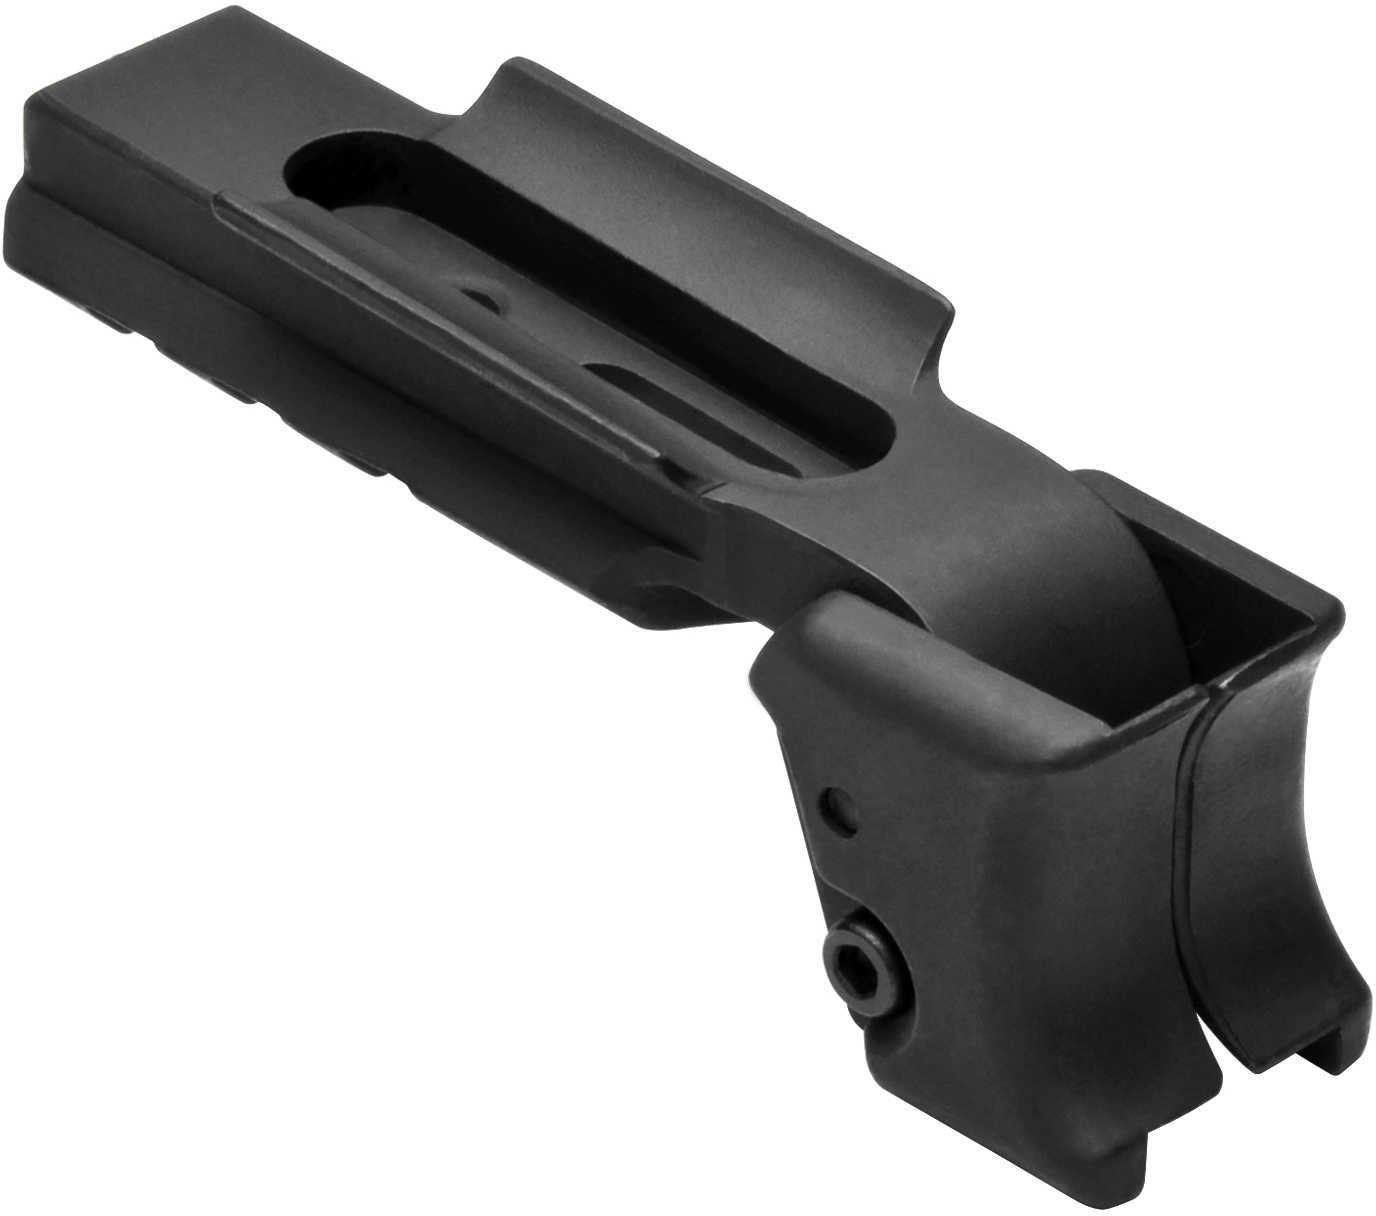 NCStar Trigger Guard Mount for Glock 26,27 Black 3.30"